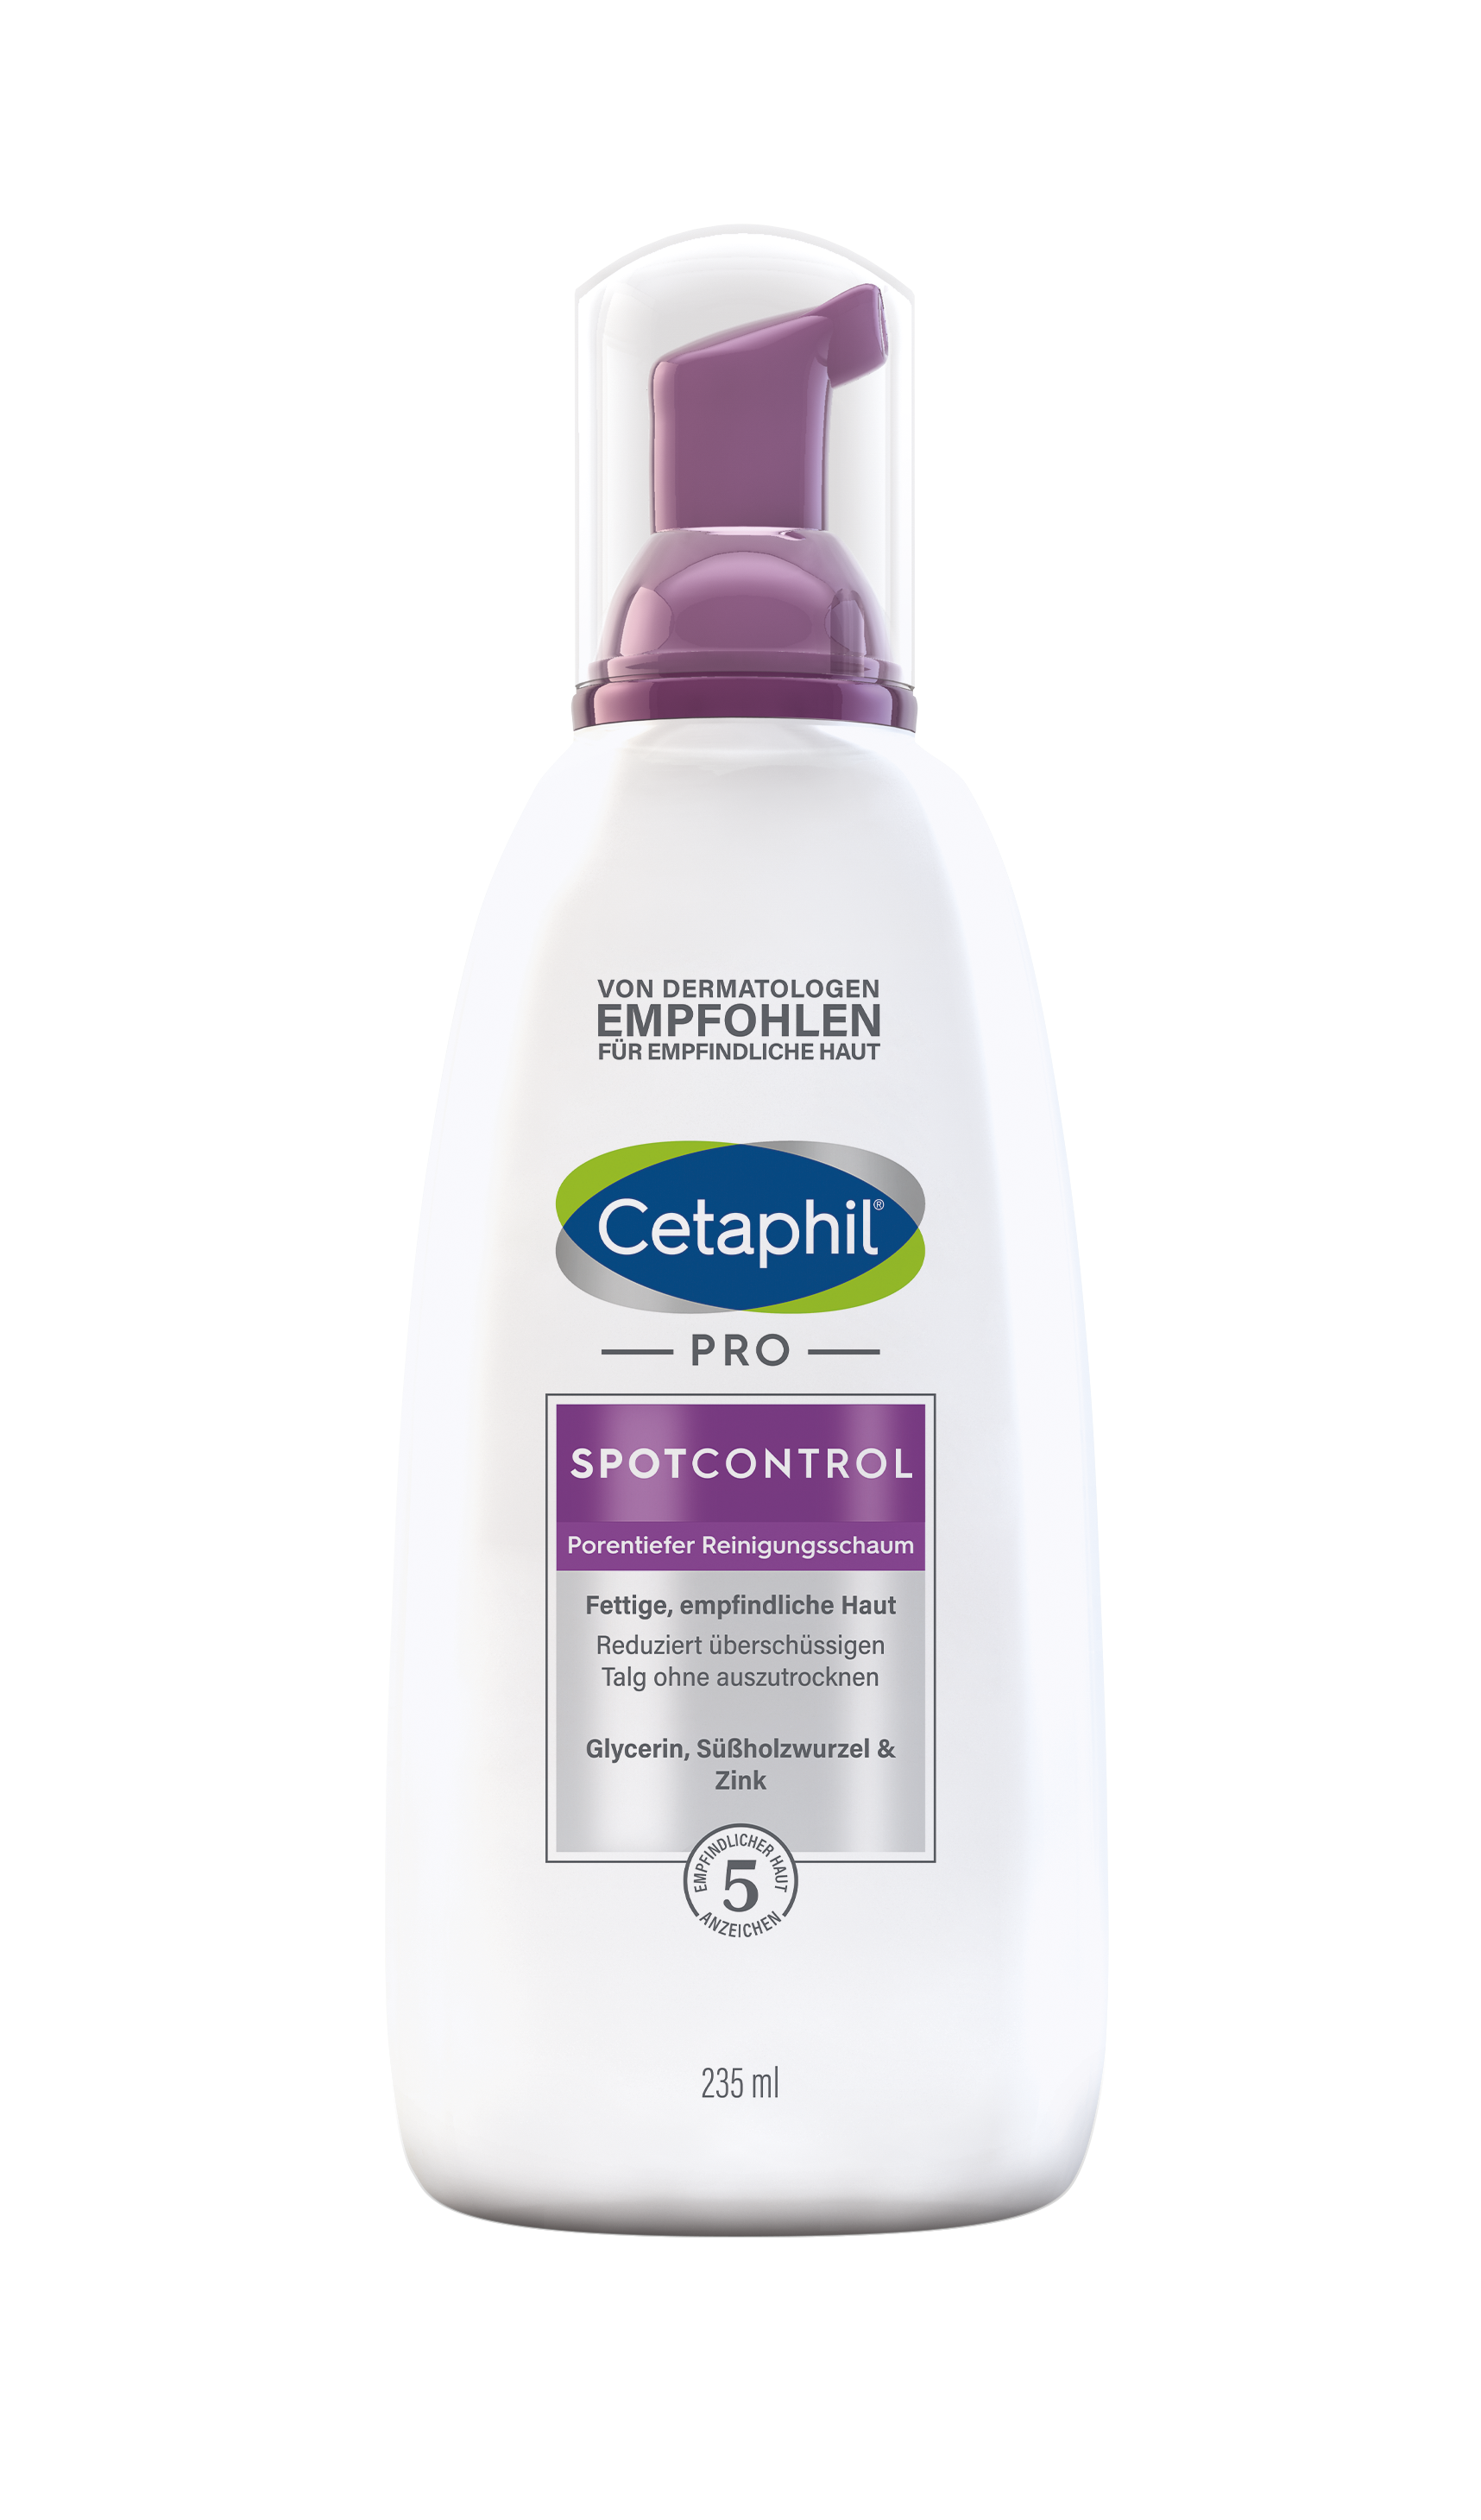 Cetaphil PRO SpotControl Porentiefer Reinigungsschaum (235 ml)